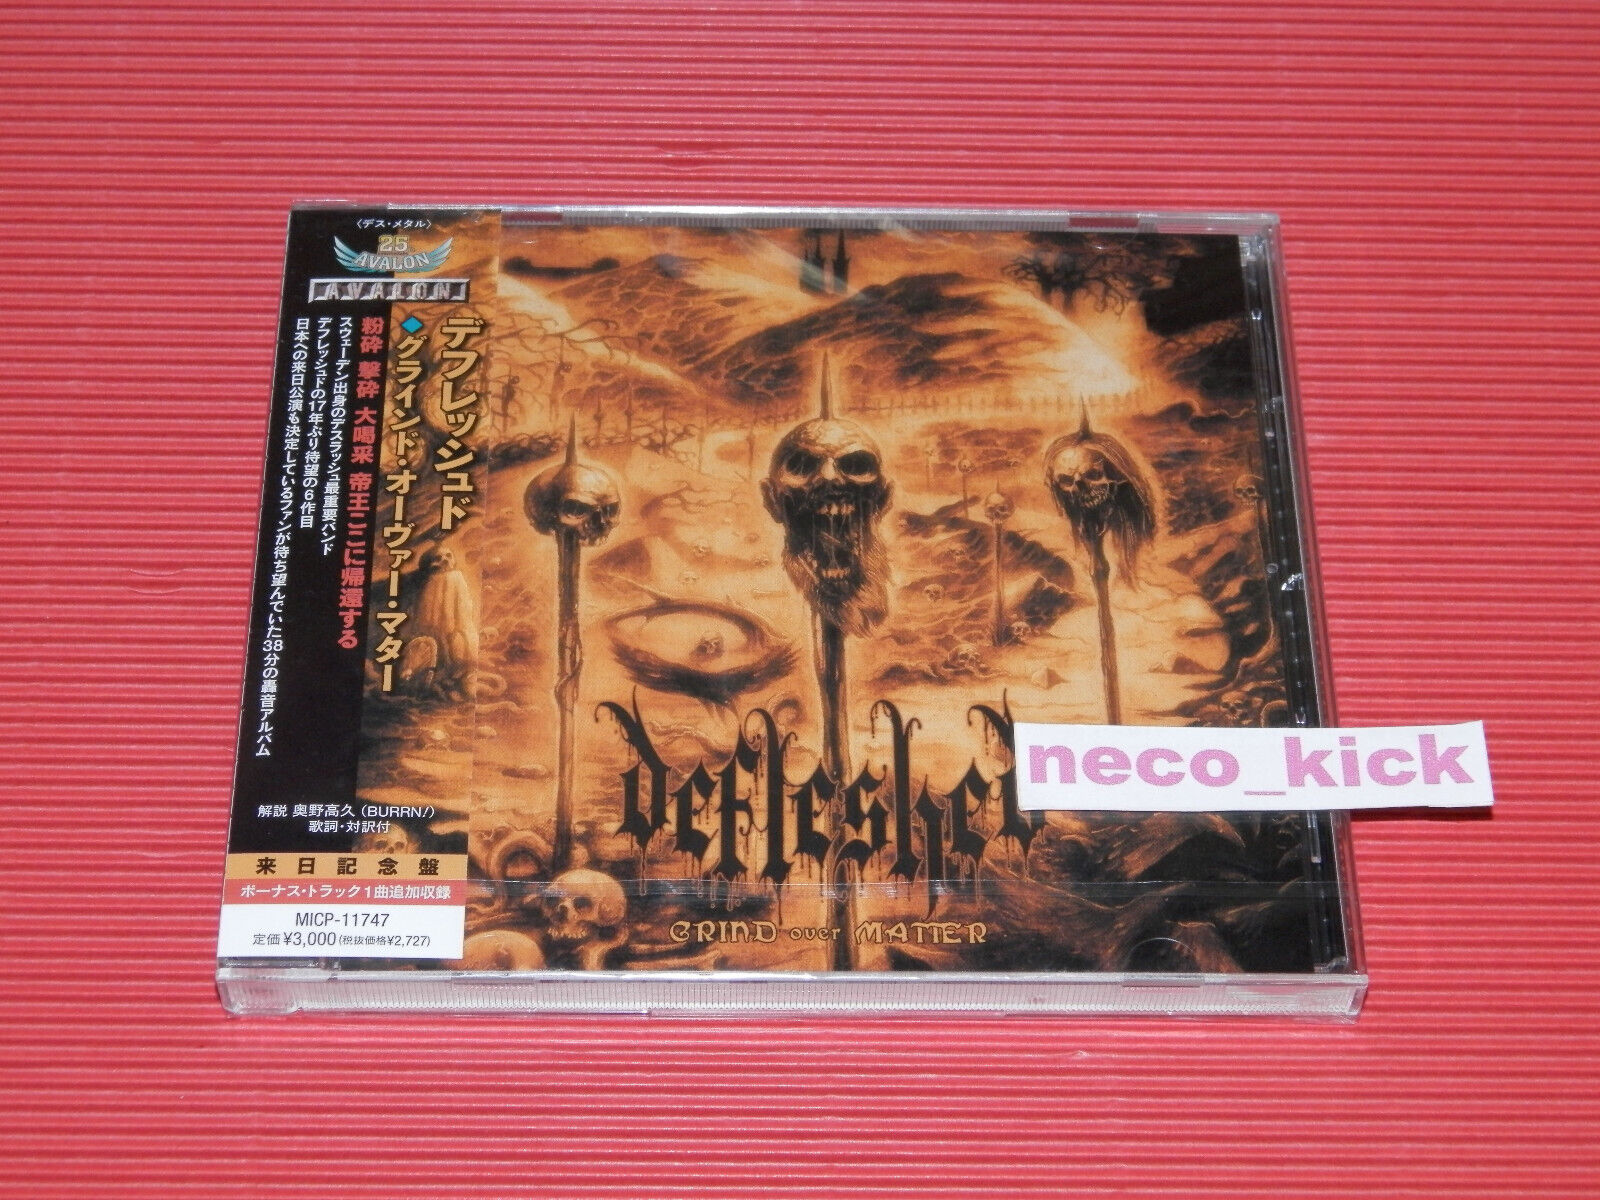 4BT DEFLESHED GRIND OVER MATTER WITH BONUS TRACK JAPAN CD